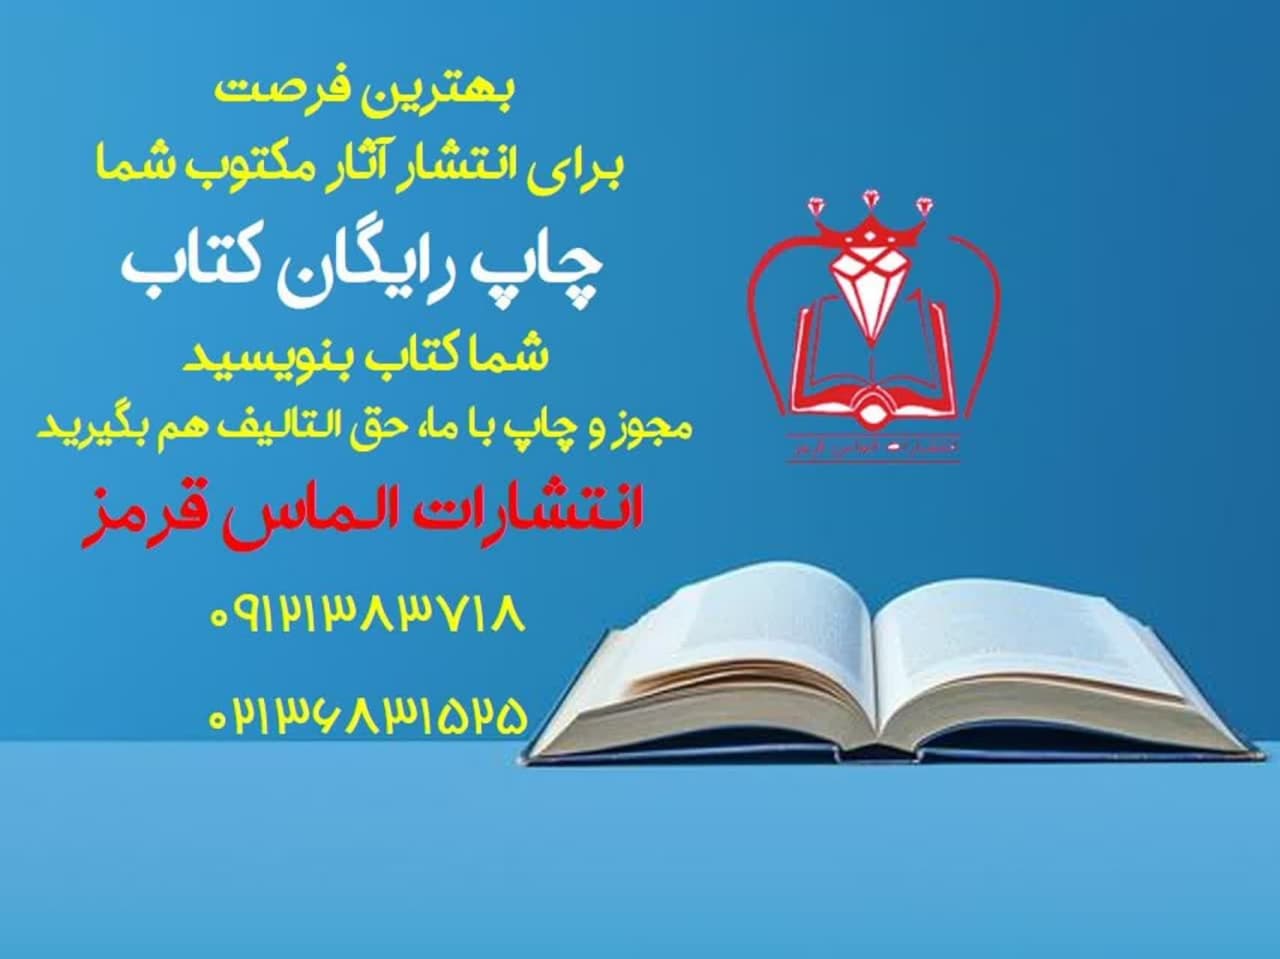 خرید امتیاز و نشر رایگان رمان در فارس